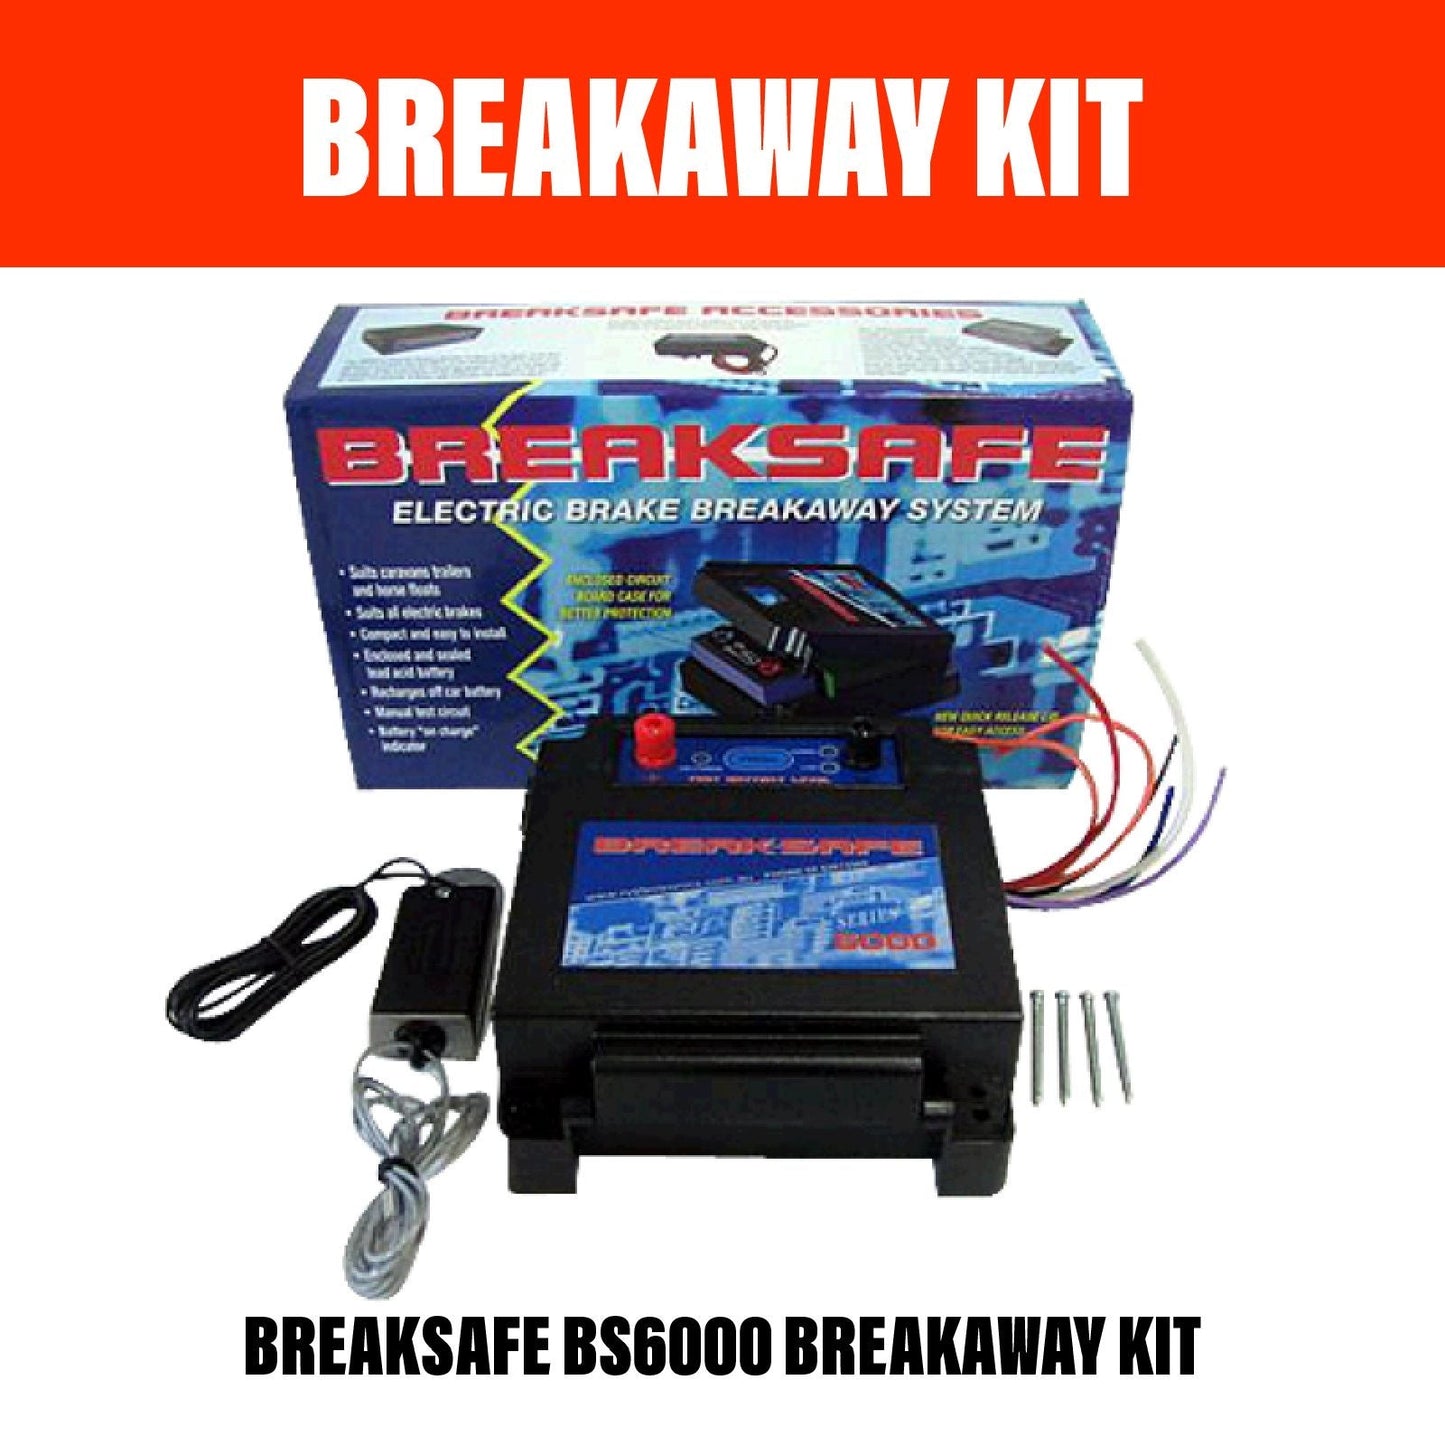 BREAKSAFE BS6000 BREAKAWAY KIT